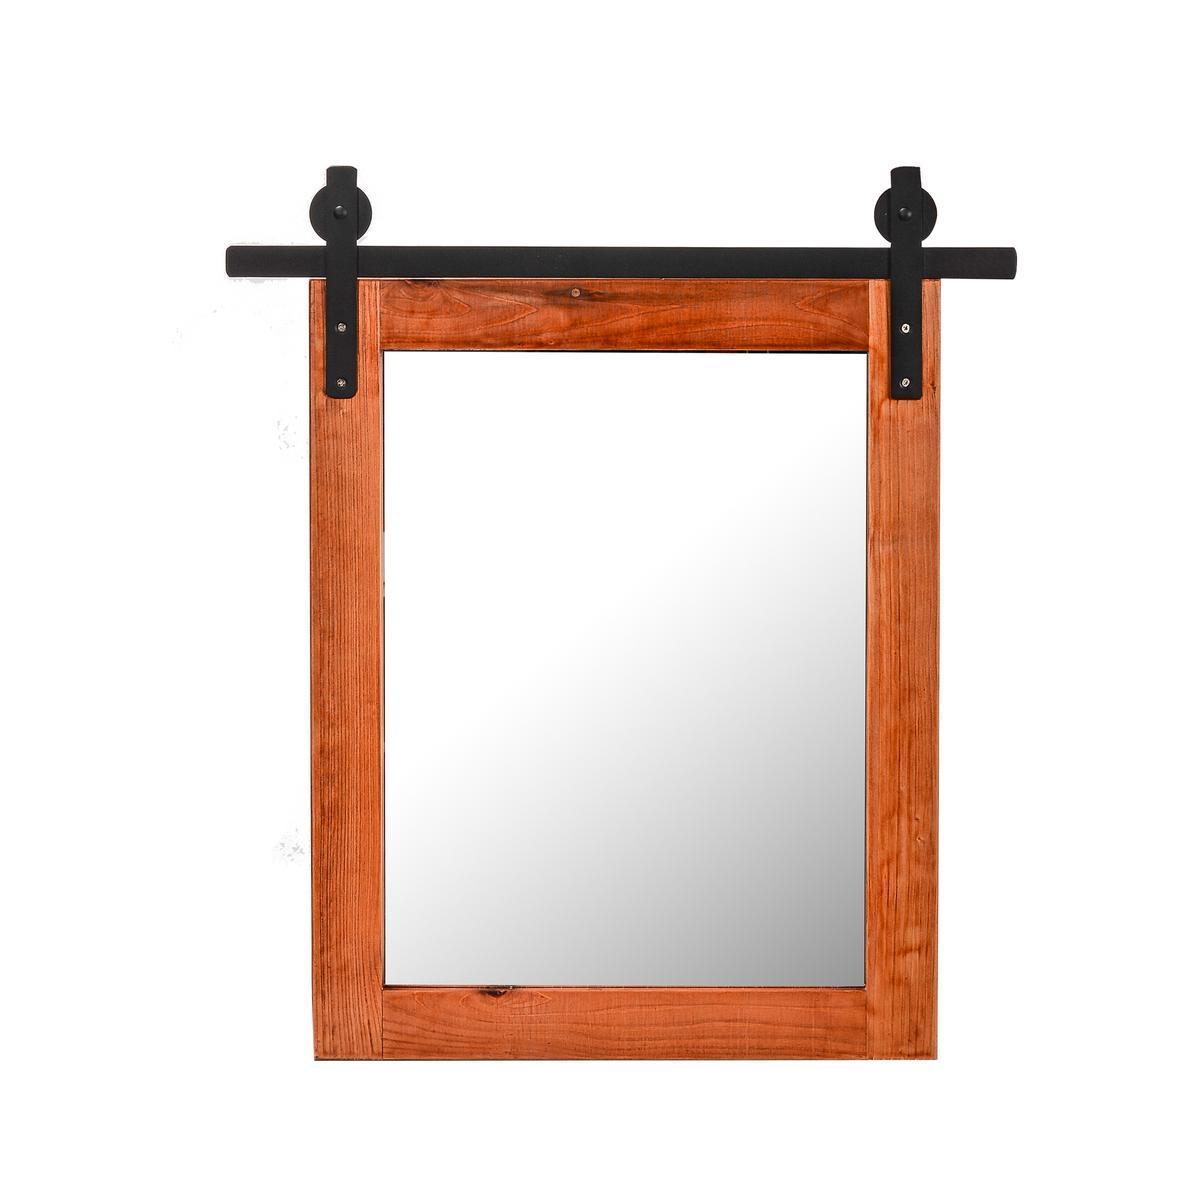 Miroir industriel - 40 x H 50 x 1.6 cm - Transparent, marron, noir